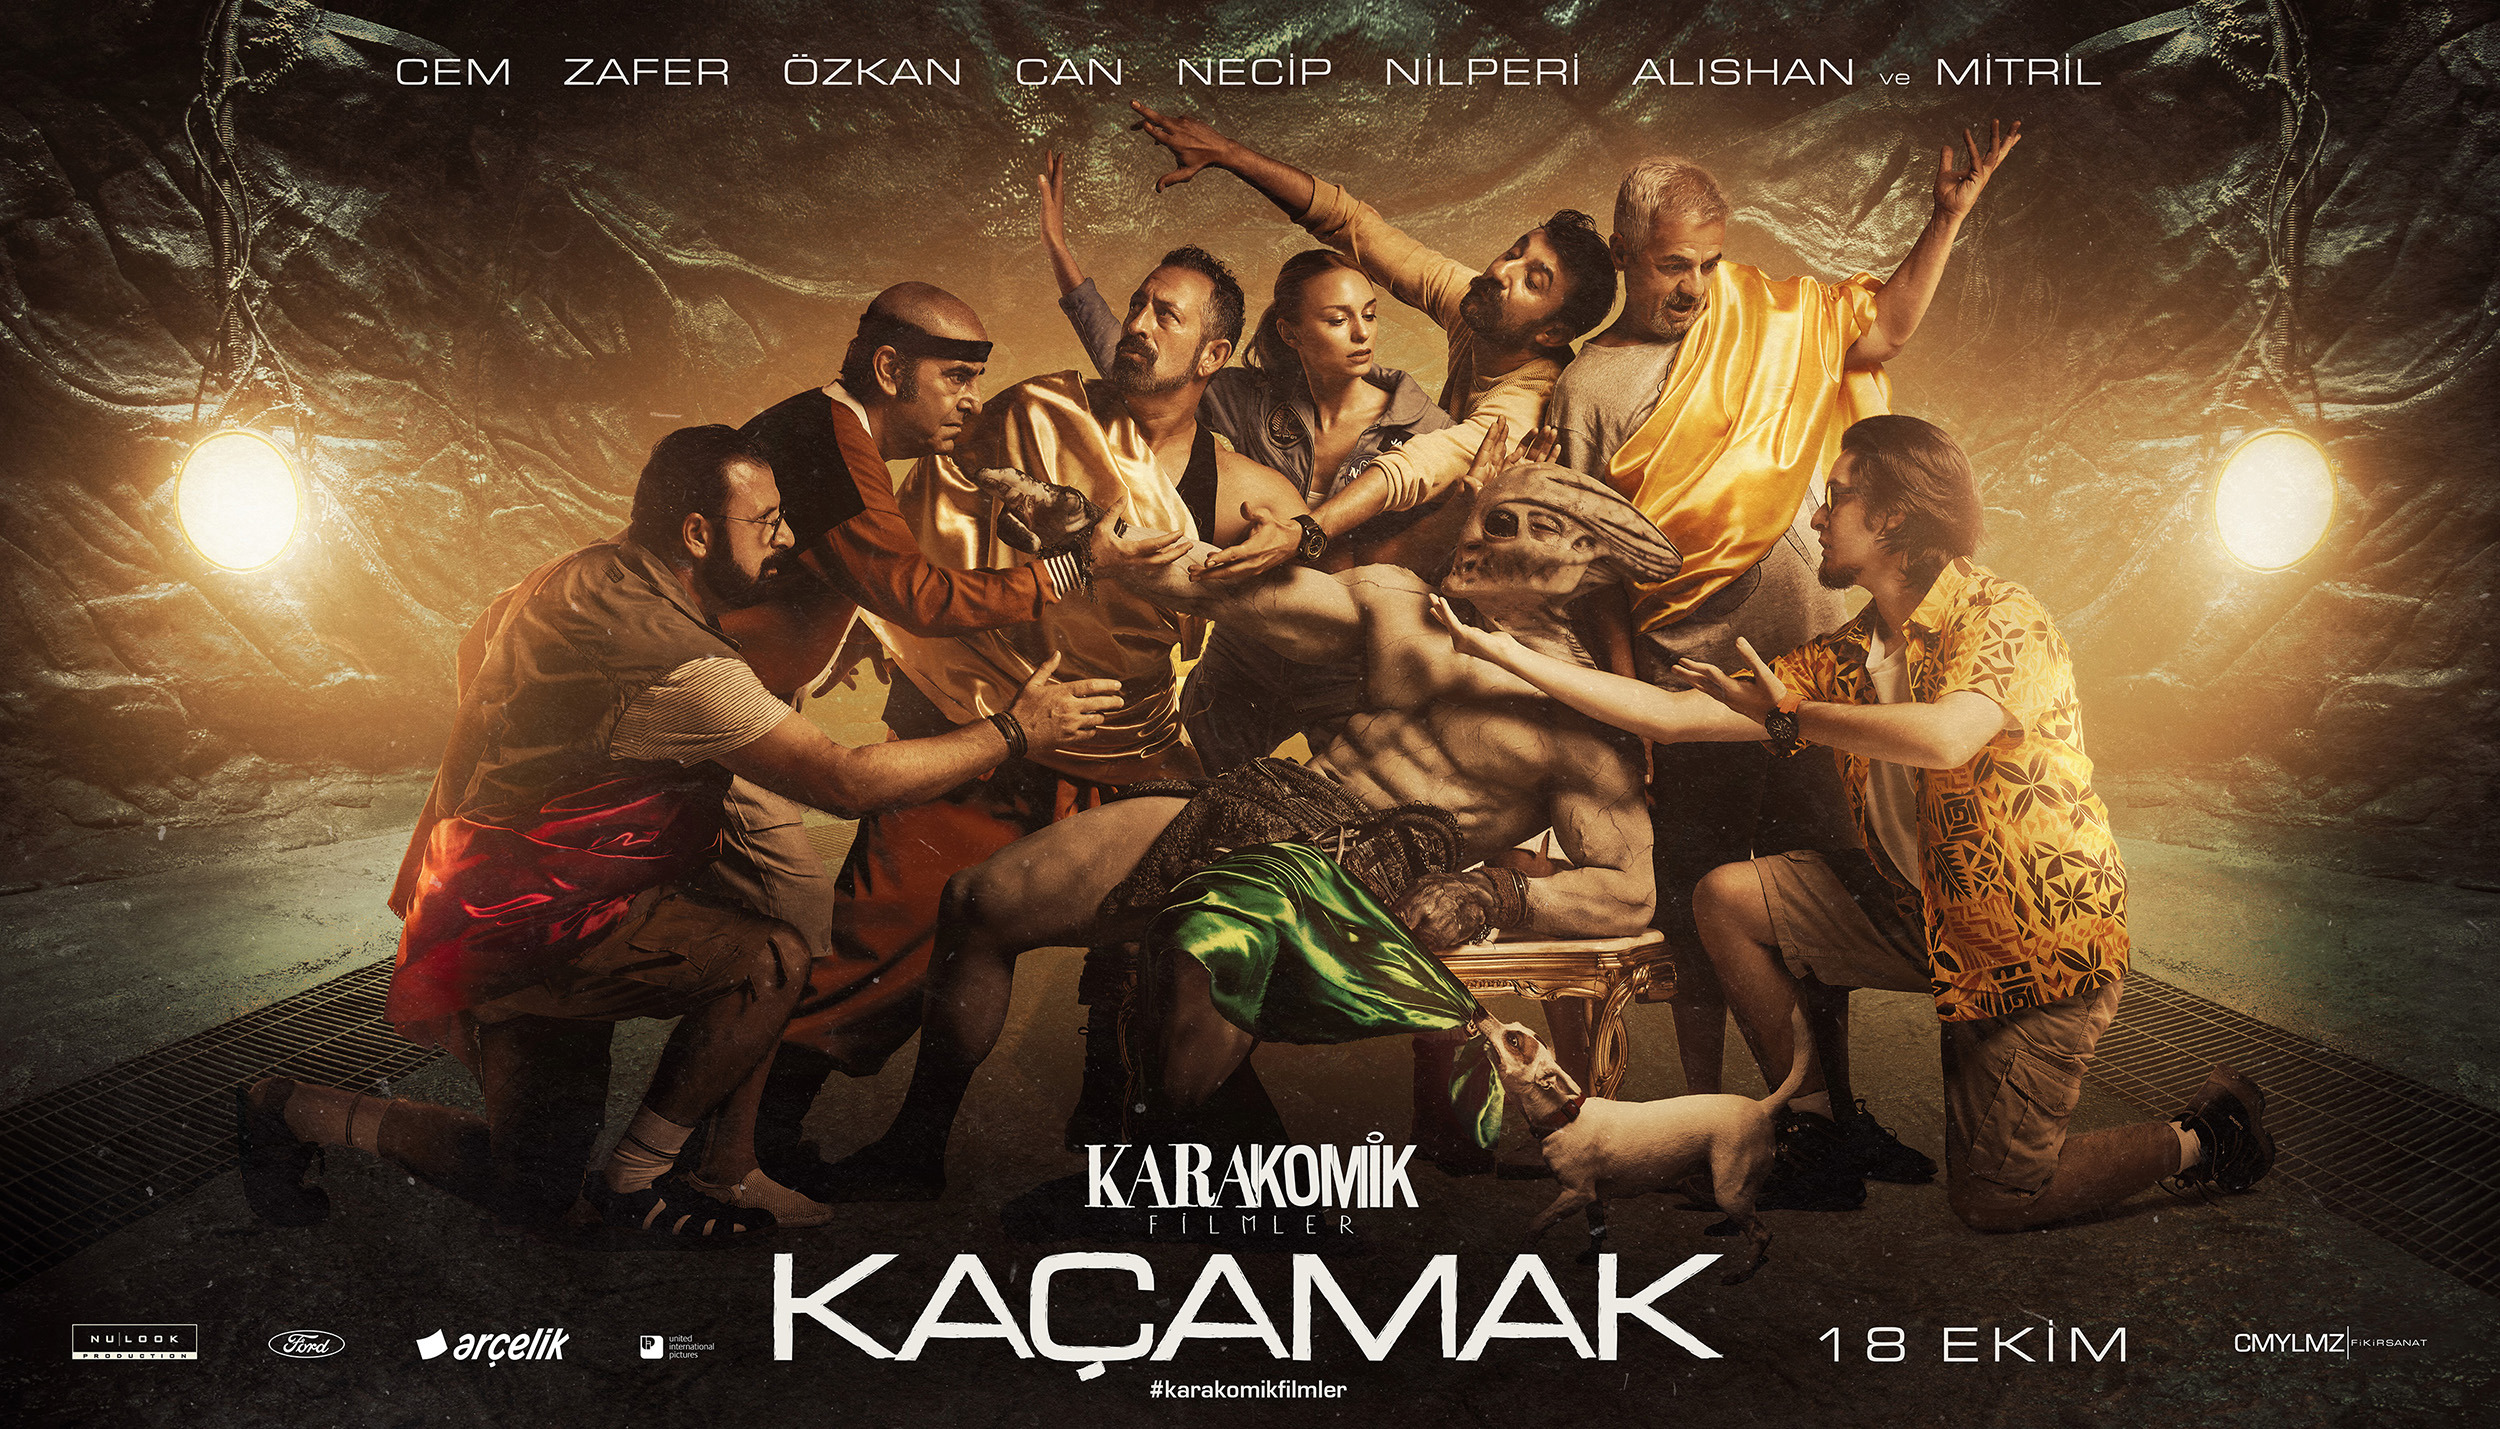 Mega Sized Movie Poster Image for Karakomik Filmler (#4 of 9)